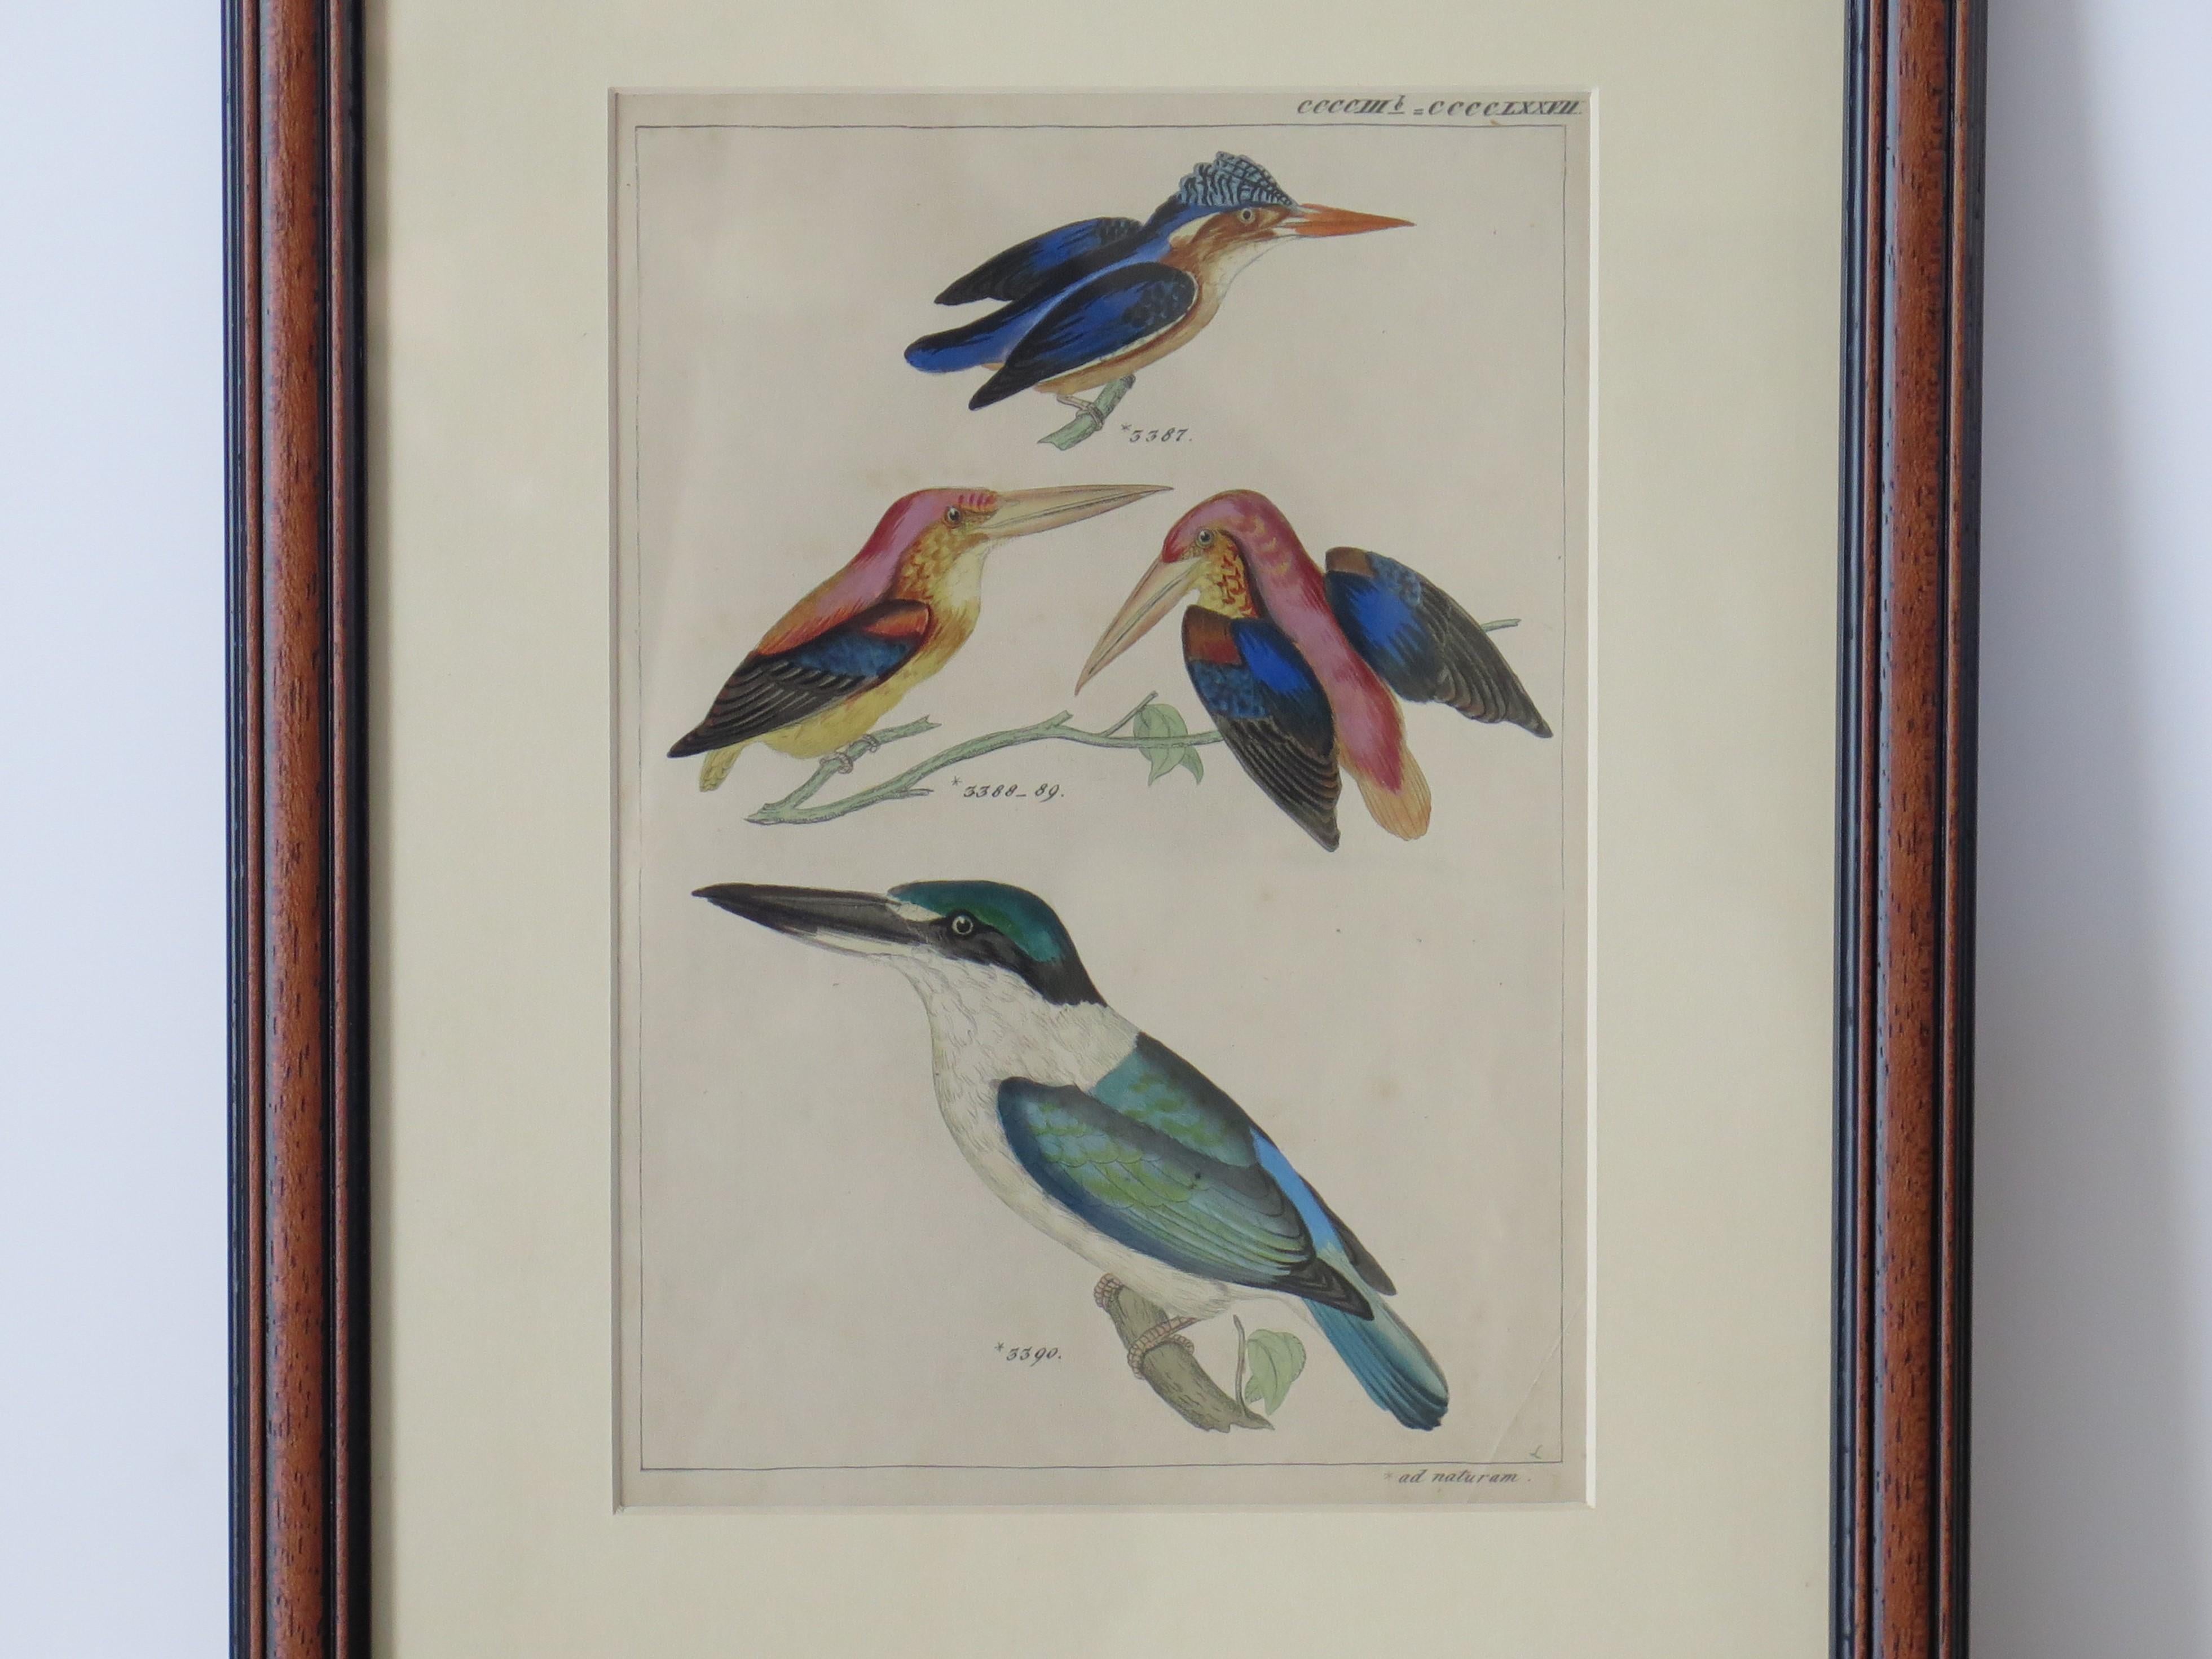 Il s'agit d'une gravure encadrée, coloriée à la main, d'une étude sur les oiseaux Kingfisher, à la manière d'Audubon Birds of America et datant du milieu du 19e siècle.

L'étude montre quatre Kingfisher, dont trois types différents avec un couple